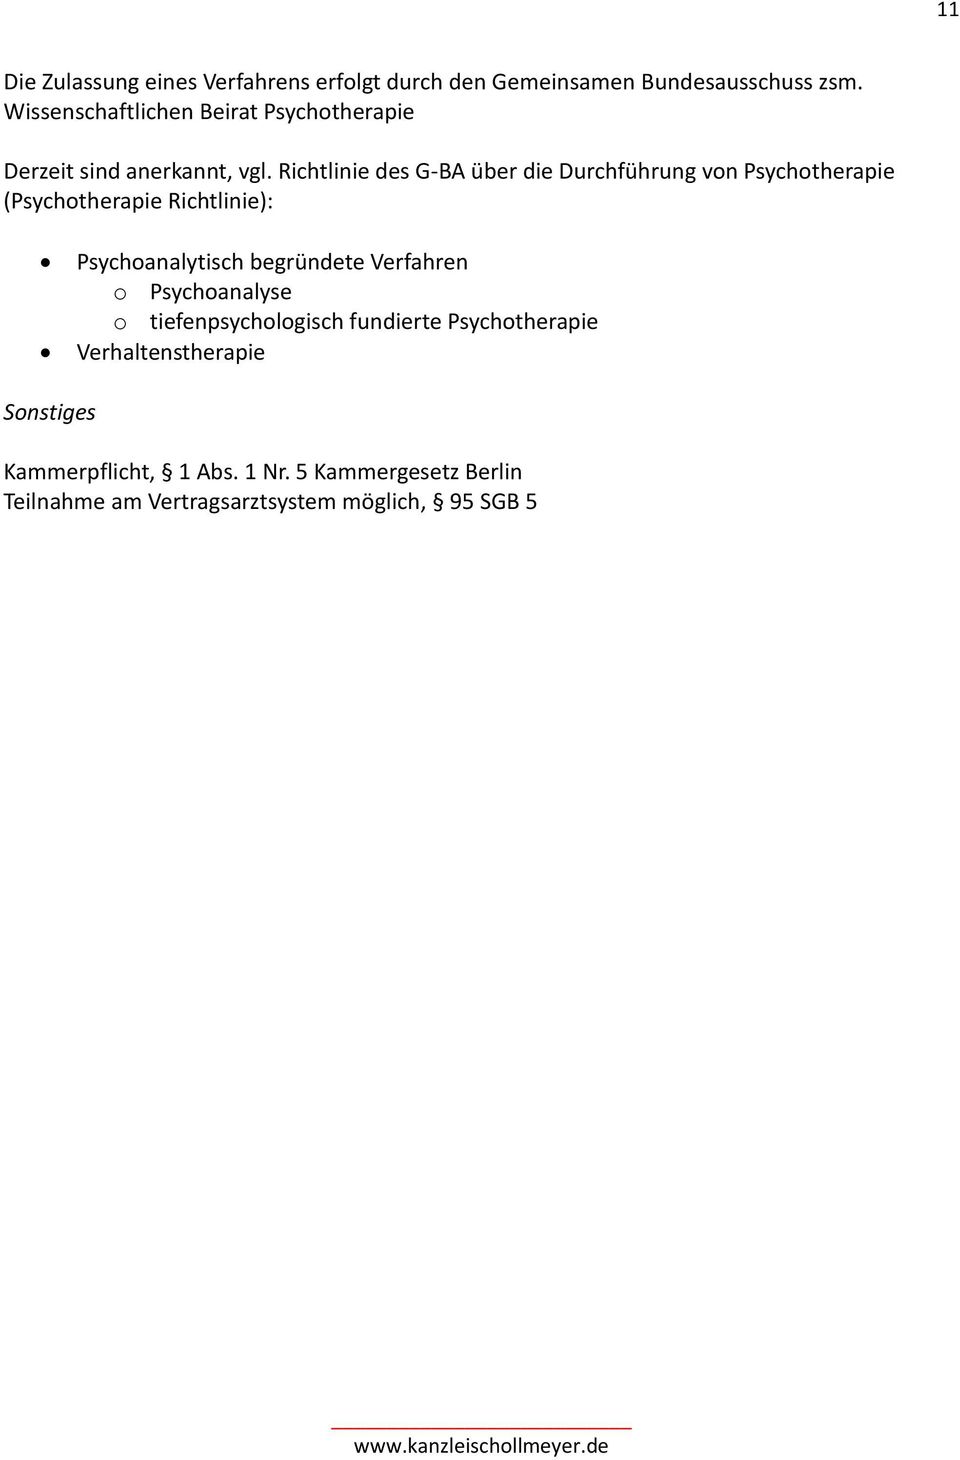 Richtlinie des G-BA über die Durchführung von Psychotherapie (Psychotherapie Richtlinie): Psychoanalytisch begründete